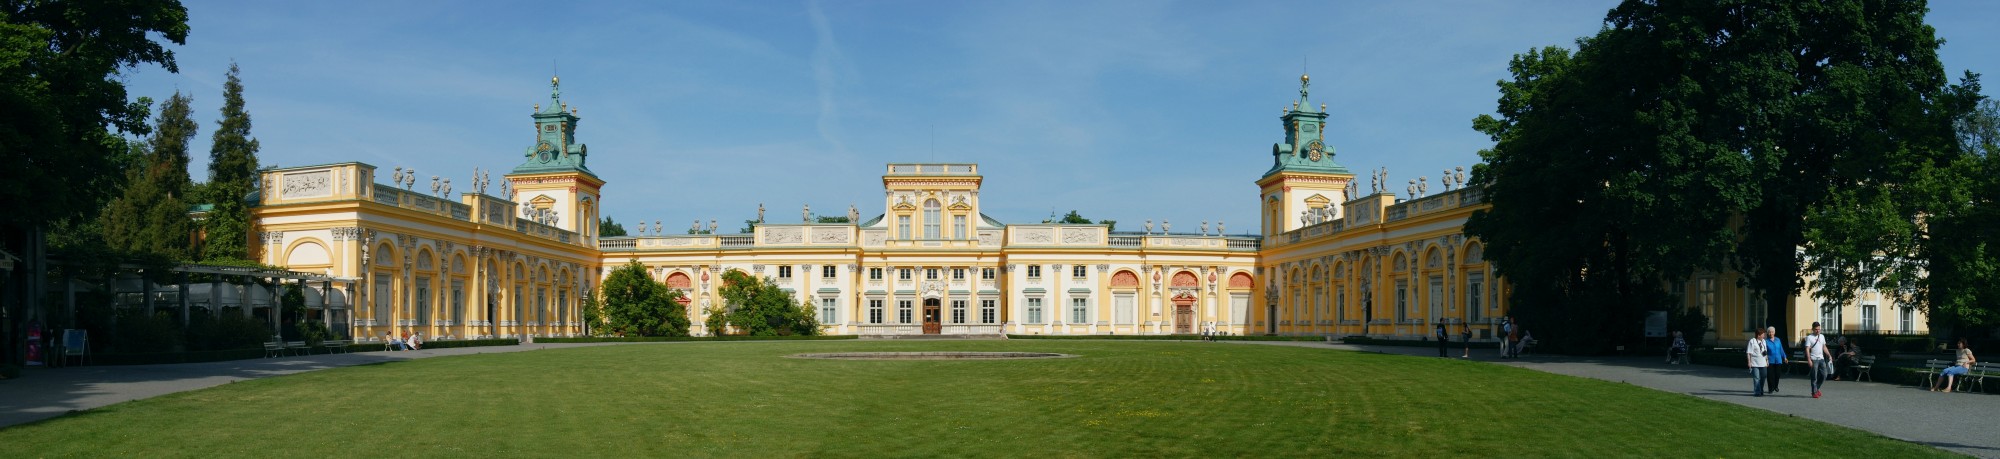 Warszawa - Wilanów Palace